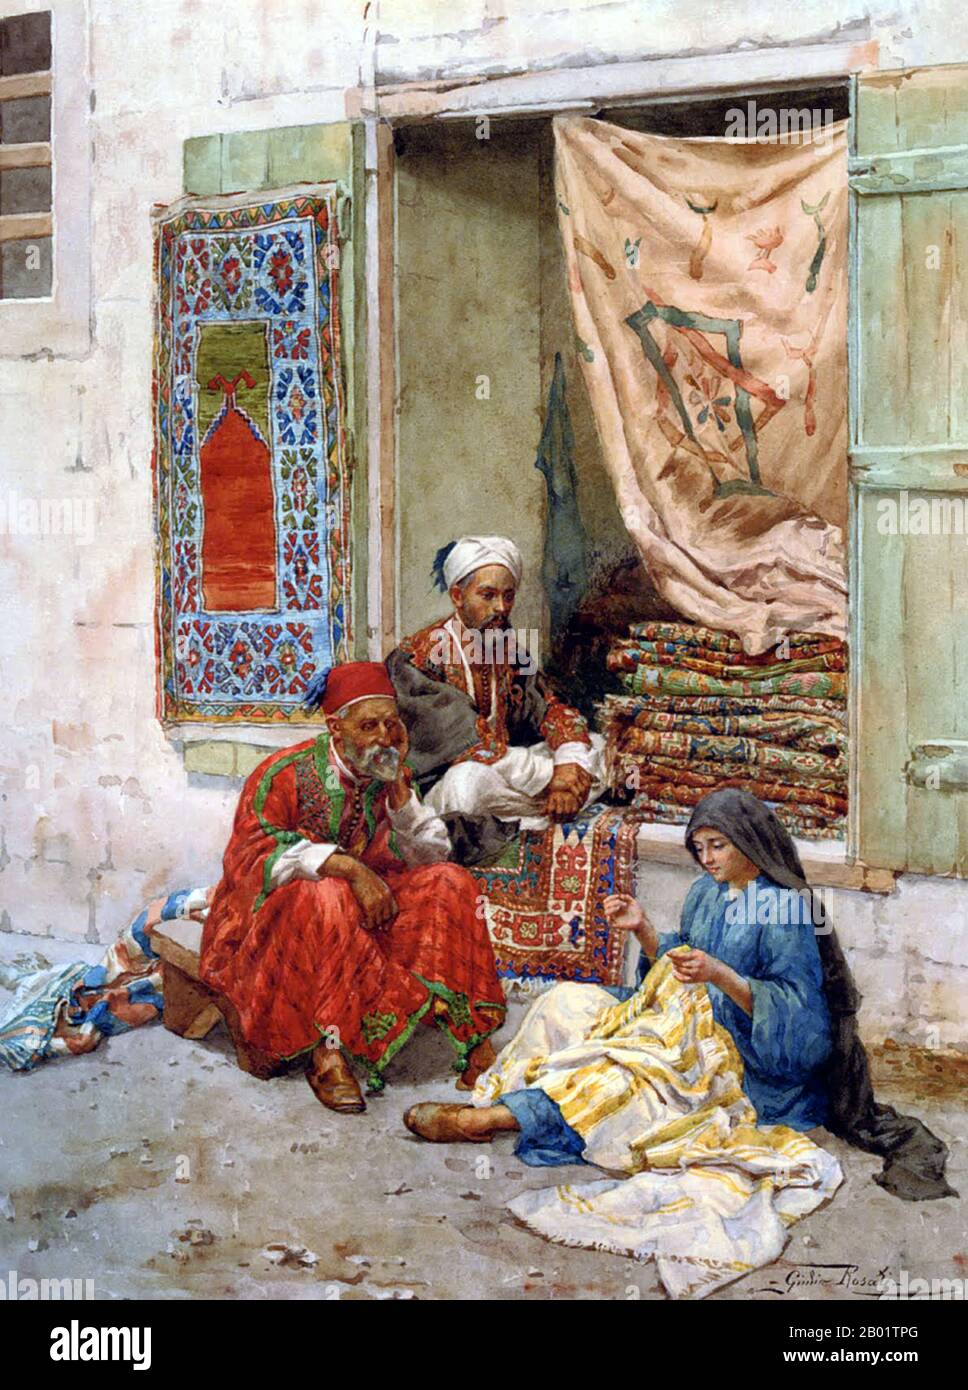 Italie/Egypte : « les marchands de tapis ». Aquarelle de Giulio Rosati (1858 - 16 février 1917), vers la fin du XIXe siècle. Un tapis oriental authentique est un tapis fait à la main qui est noué avec du velours ou tissé sans velours. Par définition - les tapis orientaux sont des tapis qui viennent de l'Orient. La définition simple du terme serait - tapis qui viennent (ont été fabriqués dans) un pays asiatique comme : la Chine et le Vietnam à l'est à la Turquie, les pays du Maghreb, Chypre et l'Iran à l'ouest et le Caucase au nord à l'Inde au sud. Banque D'Images